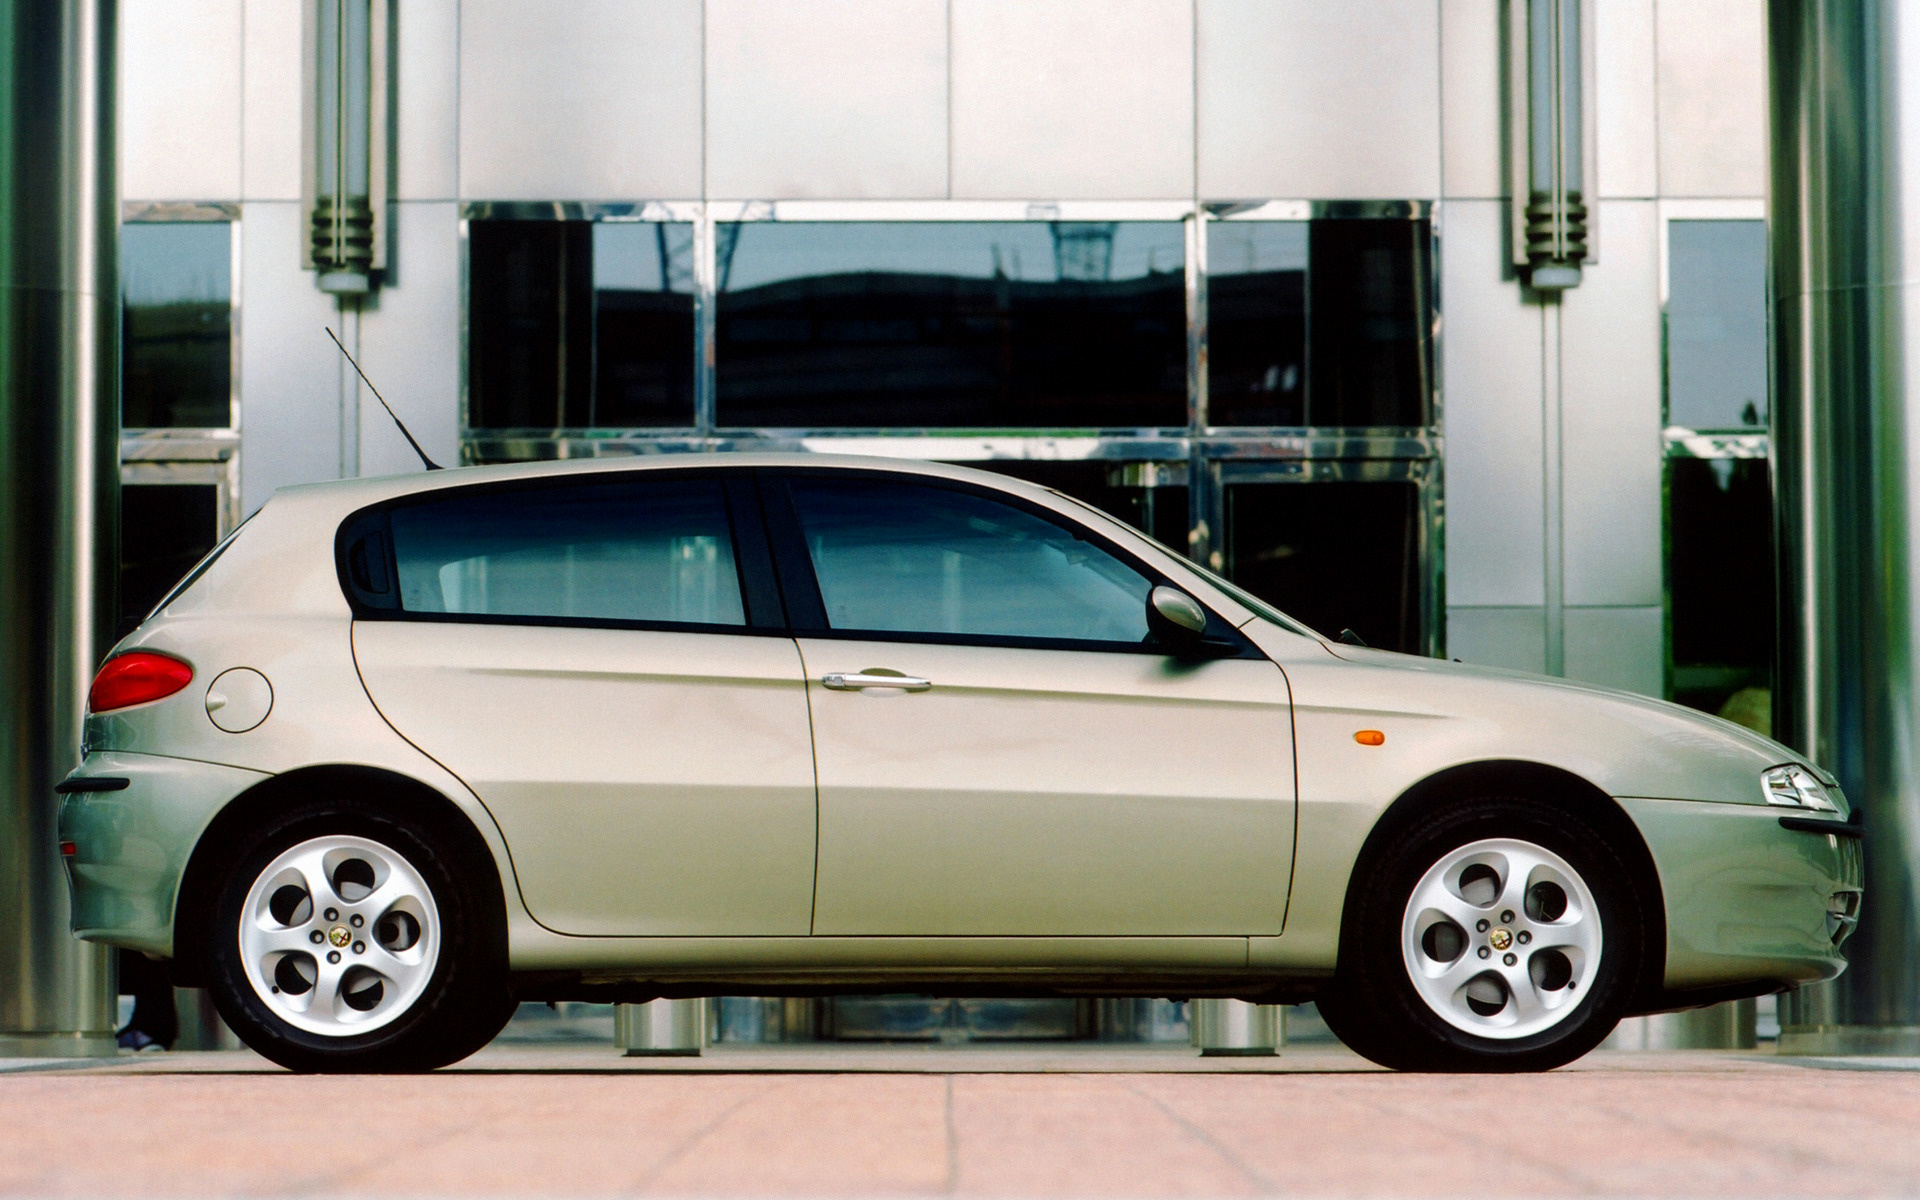 Alfa Romeo 147 5 puertas Impression (2001)